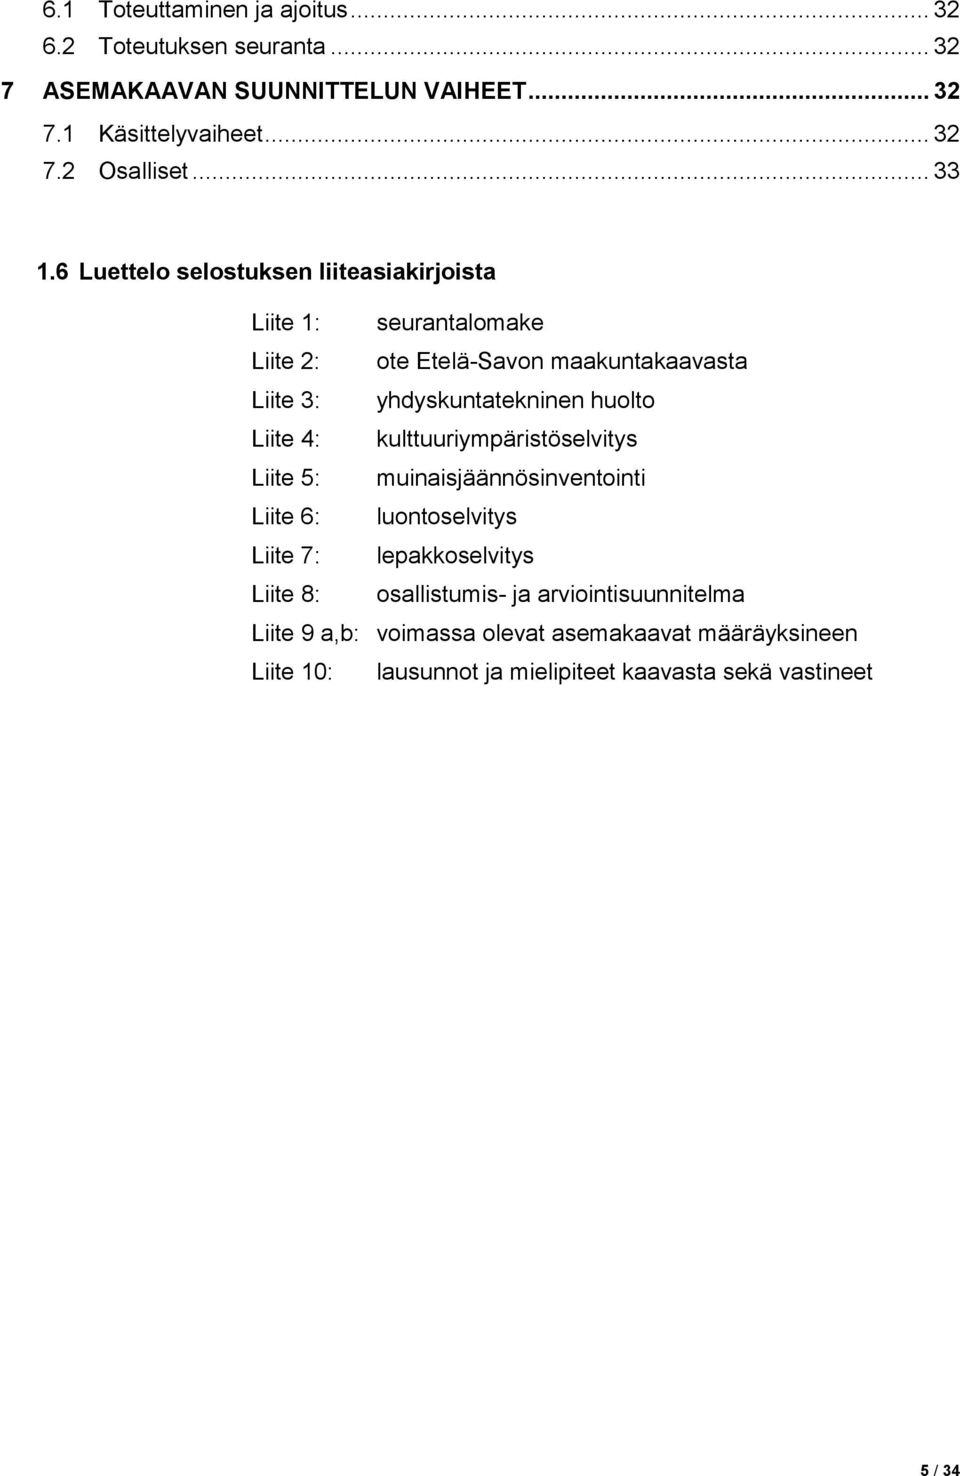 6 Luettelo selostuksen liiteasiakirjoista Liite 1: seurantalomake Liite 2: ote Etelä-Savon maakuntakaavasta Liite 3: yhdyskuntatekninen huolto